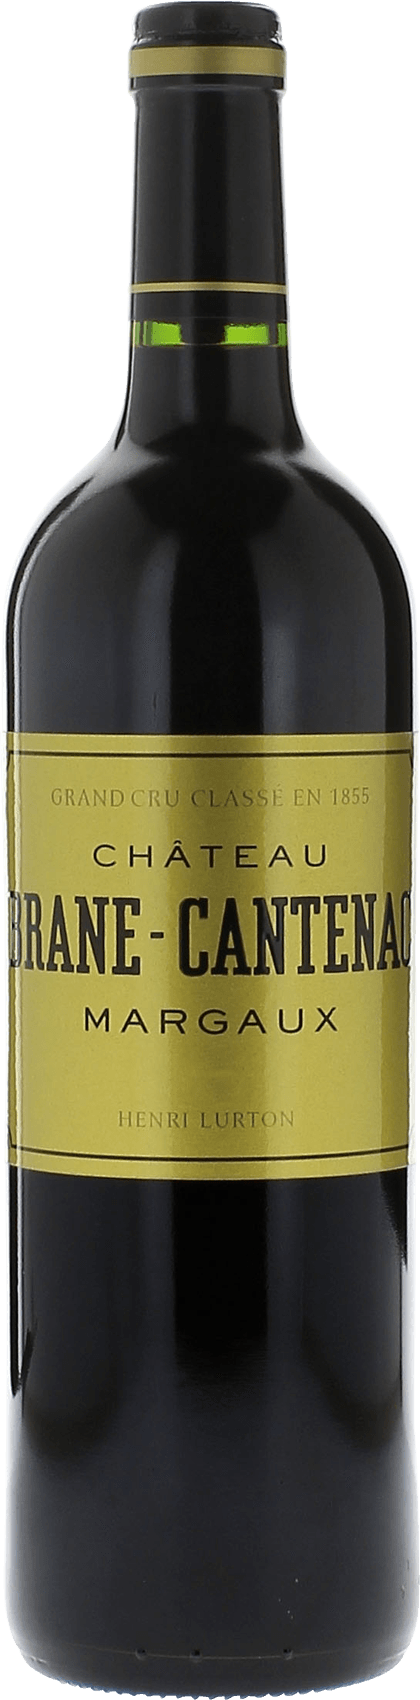 Brane-cantenac  1999 2me Grand cru class Margaux, Bordeaux rouge